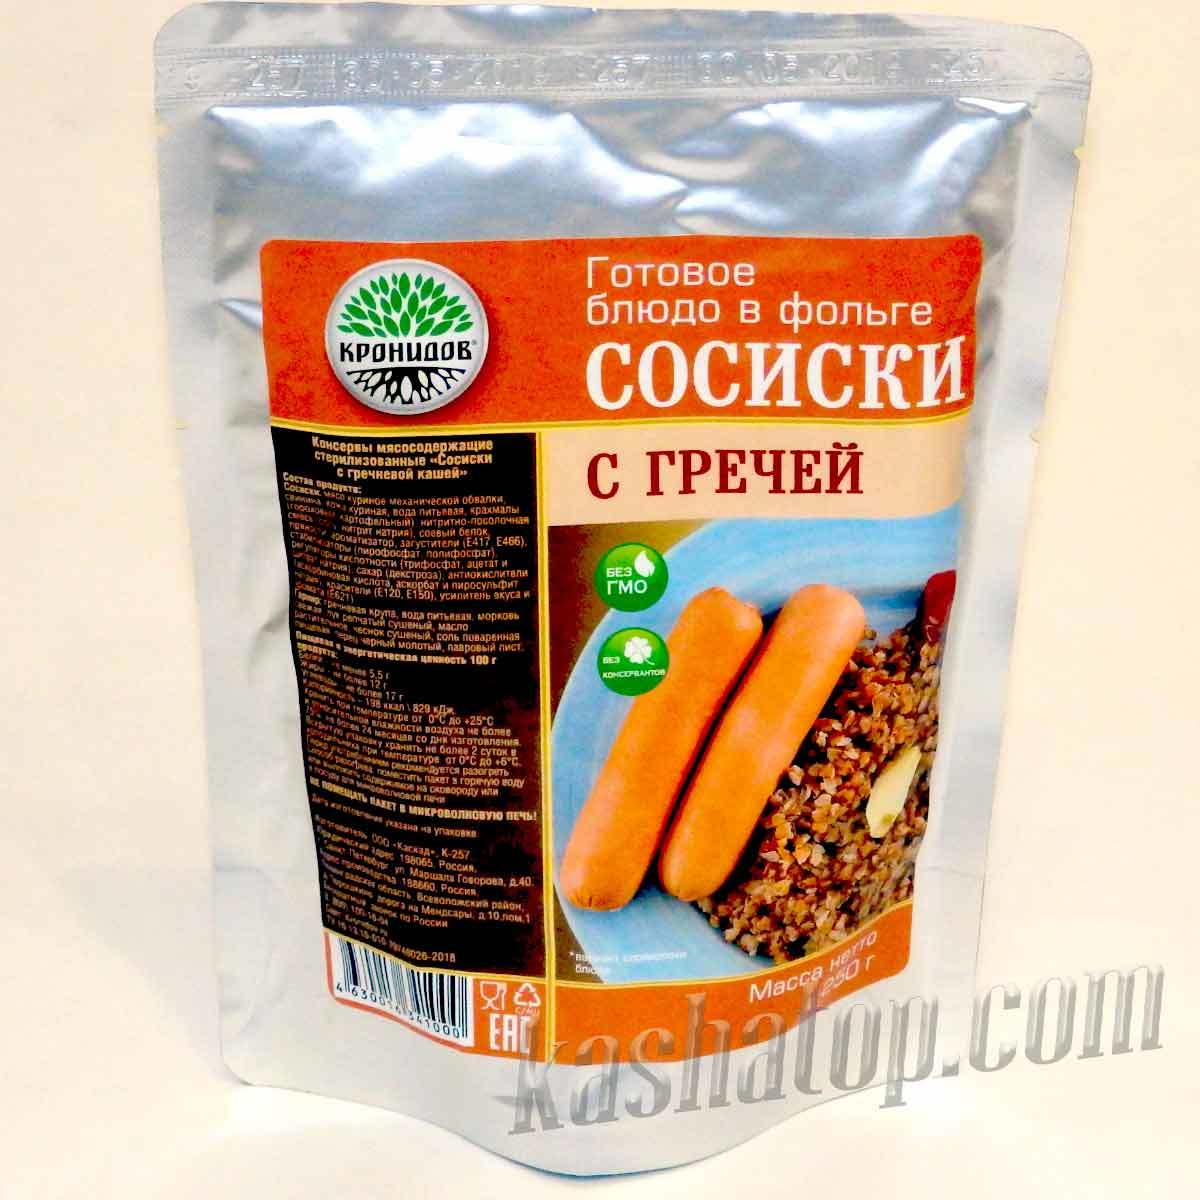 Сосиски в духовке - как приготовить, рецепт с фото по шагам, калорийность - manikyrsha.ru